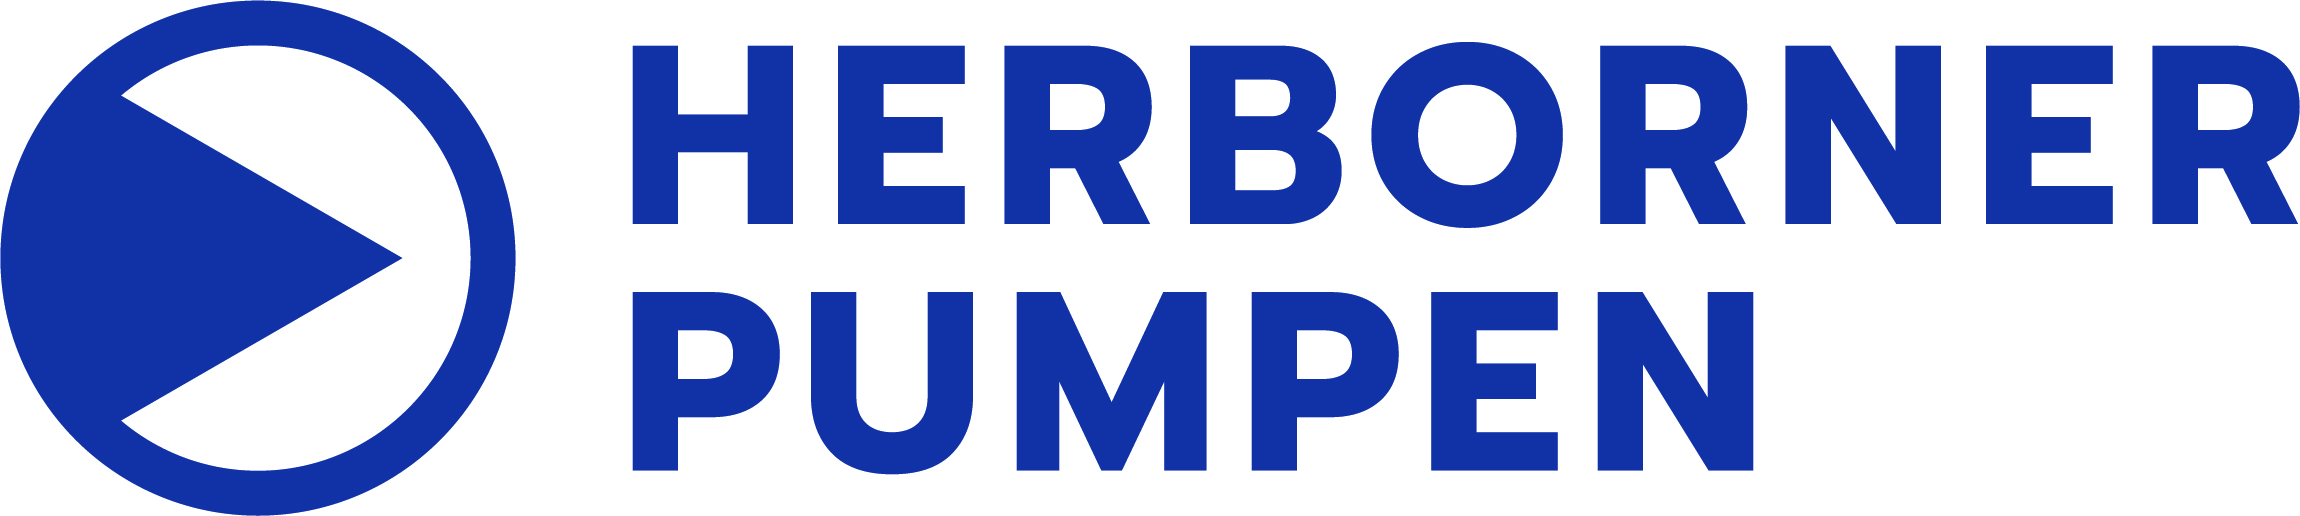 Exclusieve vertegenwoordiging Herborner Pumpenfabrik per 1-3-2015